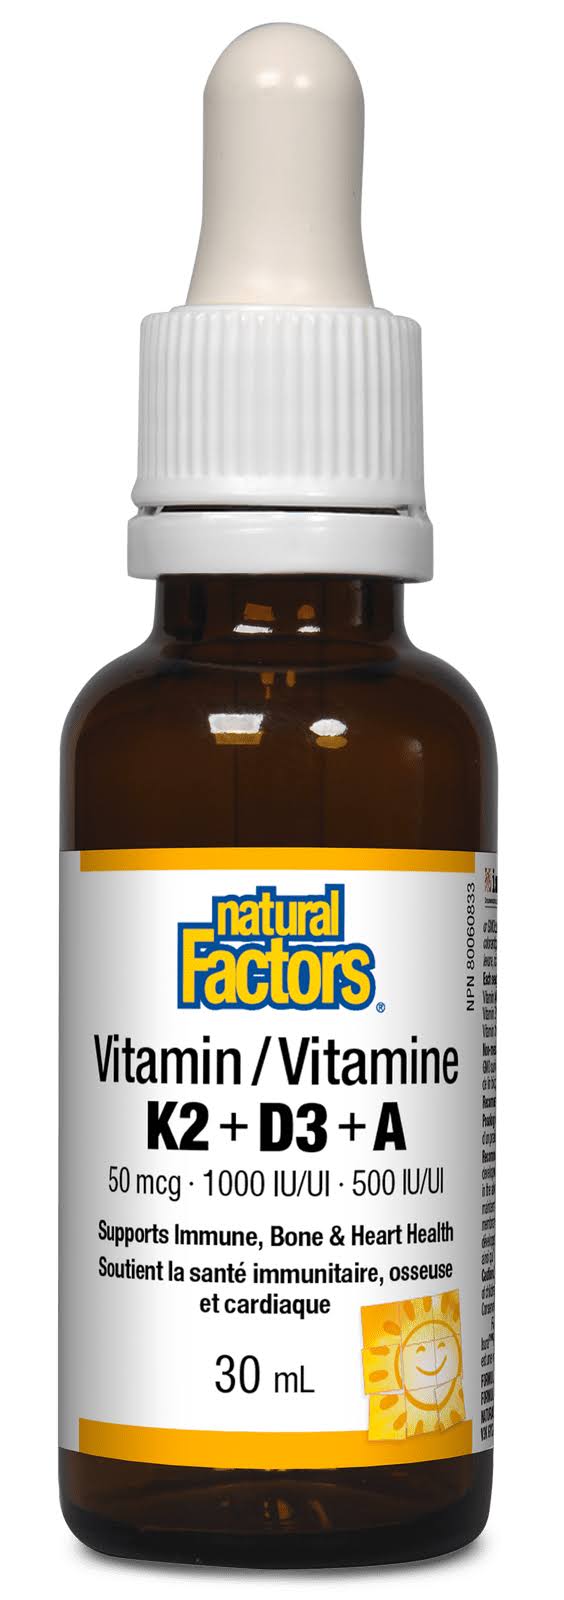 Natural Factors Vitamin K2 + D3 + A (30mL)